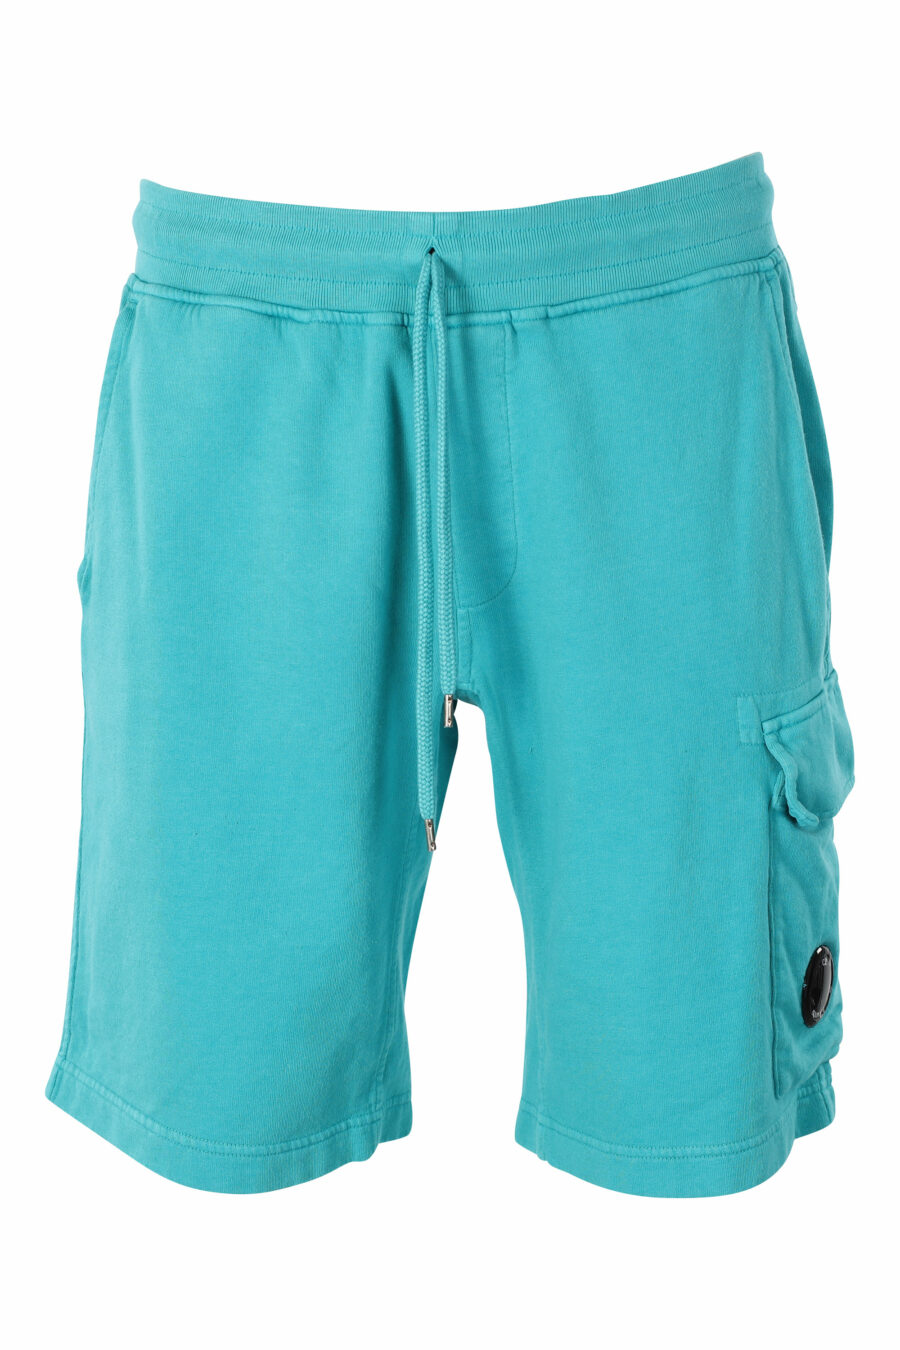 Pantalón de chándal corto color turquesa estilo cargo con minilogo circular - IMG 9551